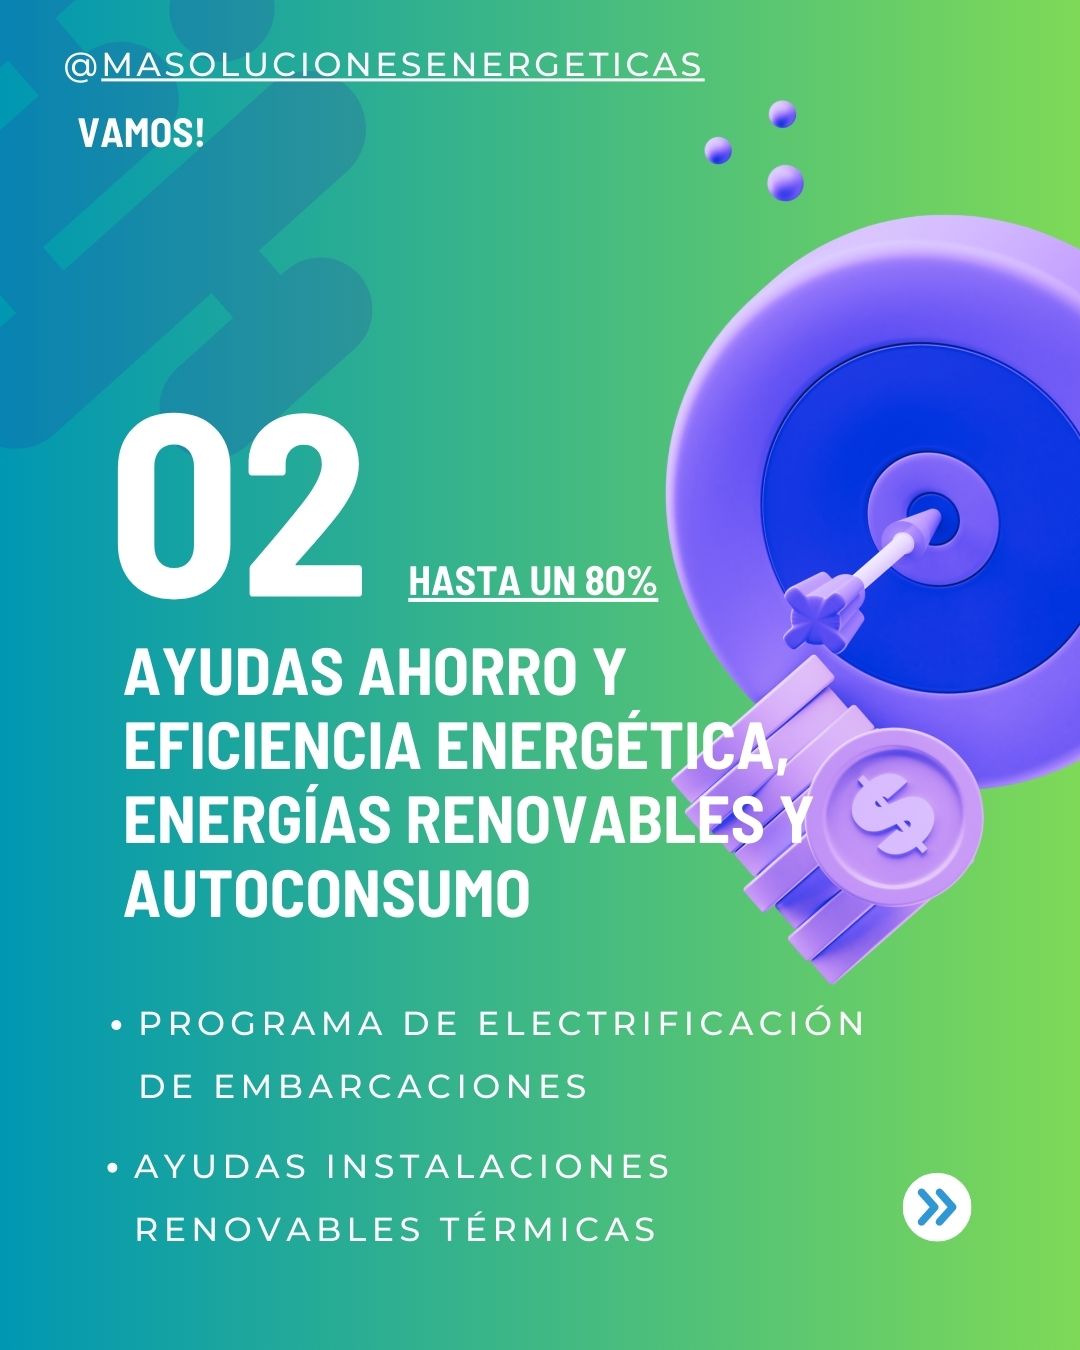 Images M.A. Soluciones Energéticas